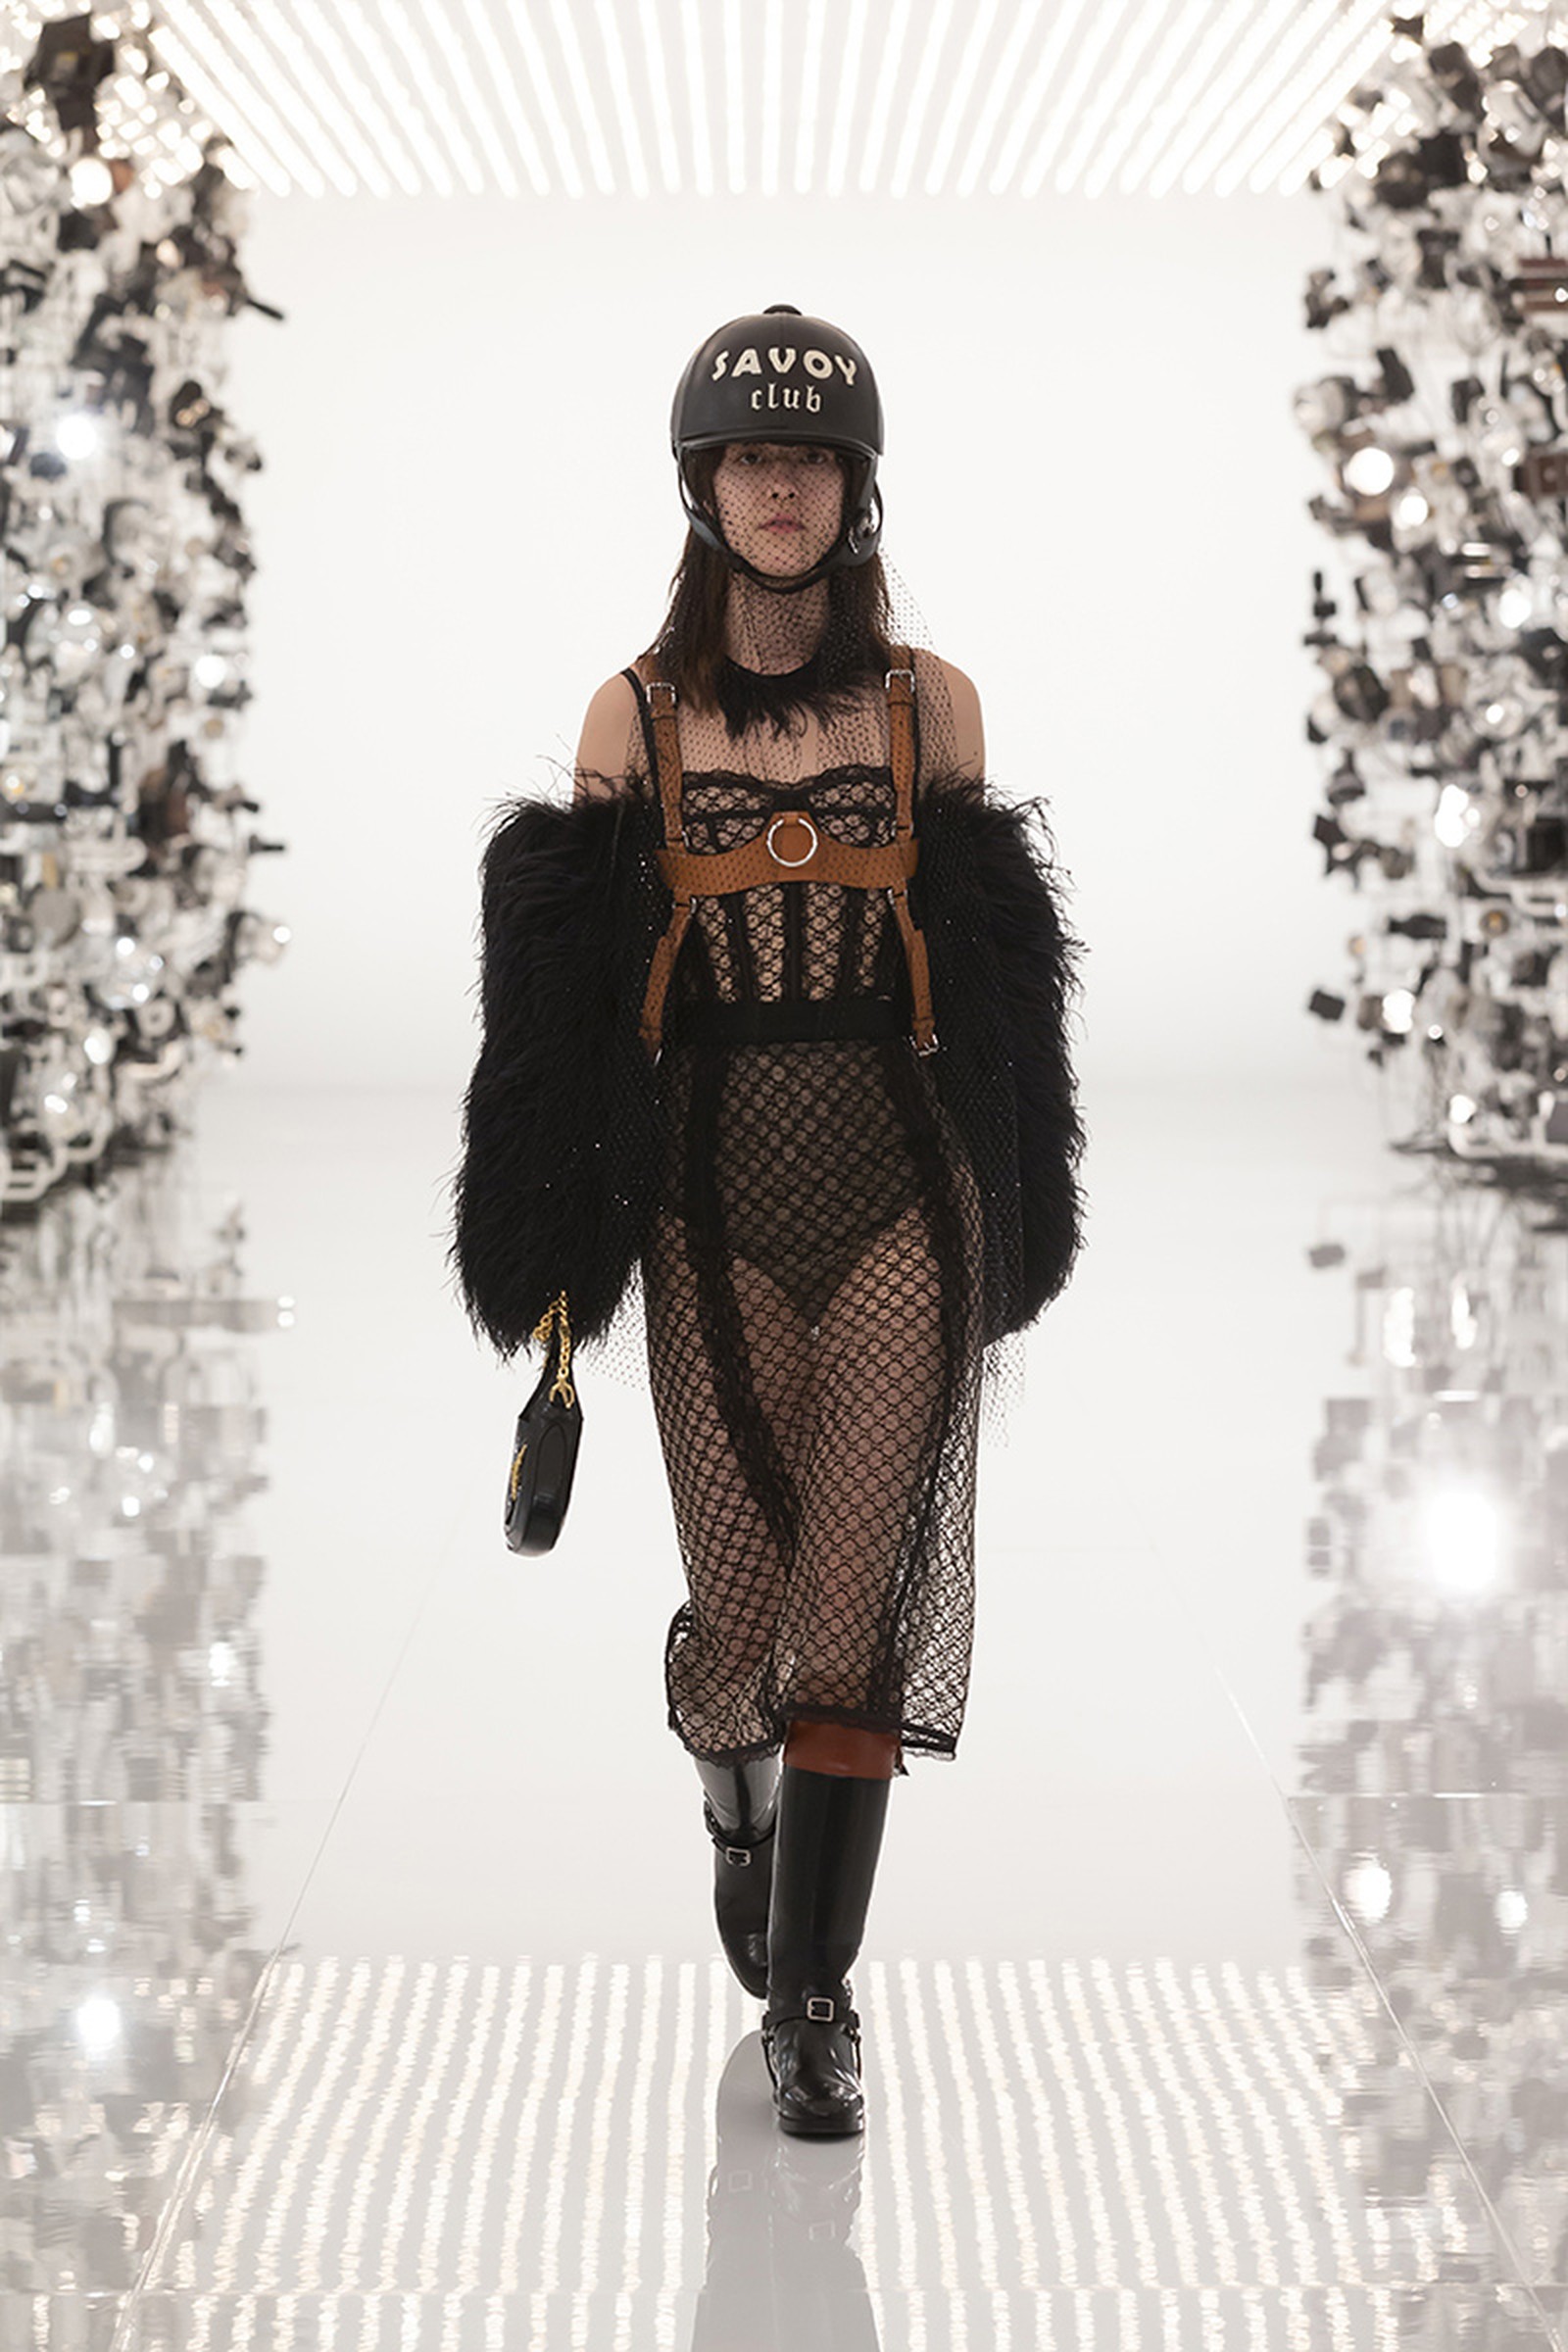 Gucci x Balenciaga runway look savoy club hat in black color